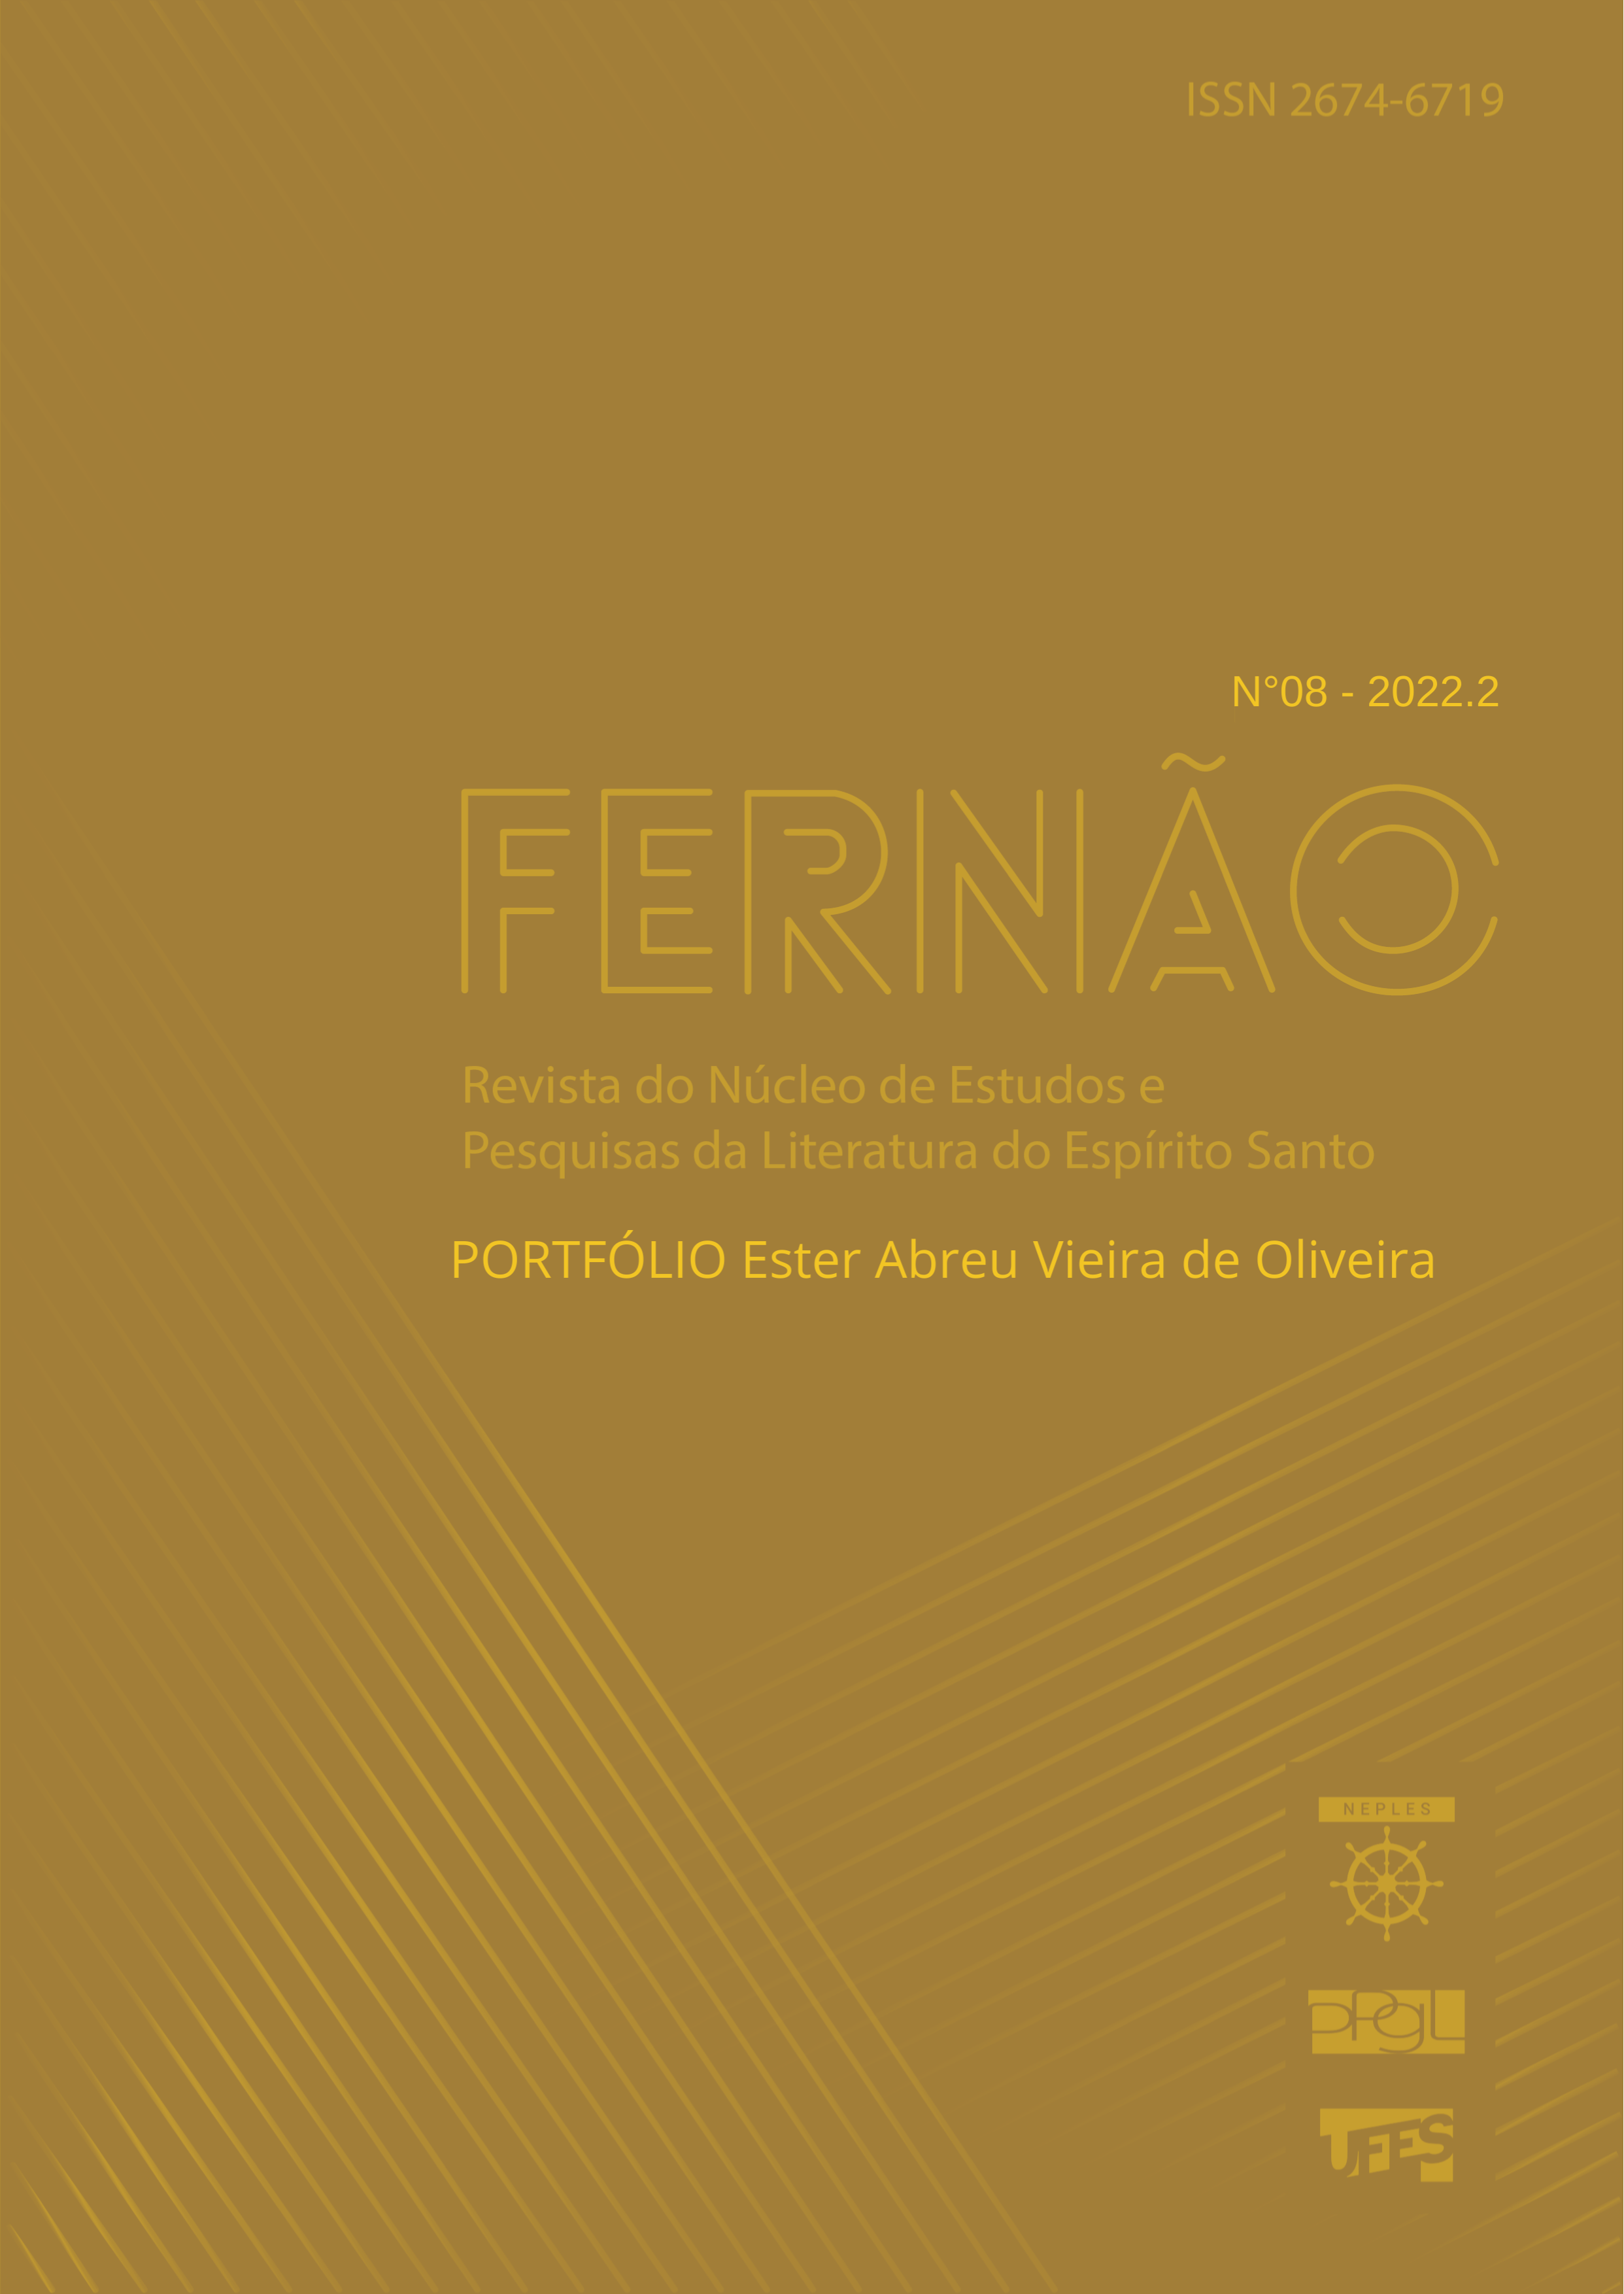 					Afficher Vol. 4 No 8 (2022): Portfólio Ester Abreu Vieira de Oliveira
				